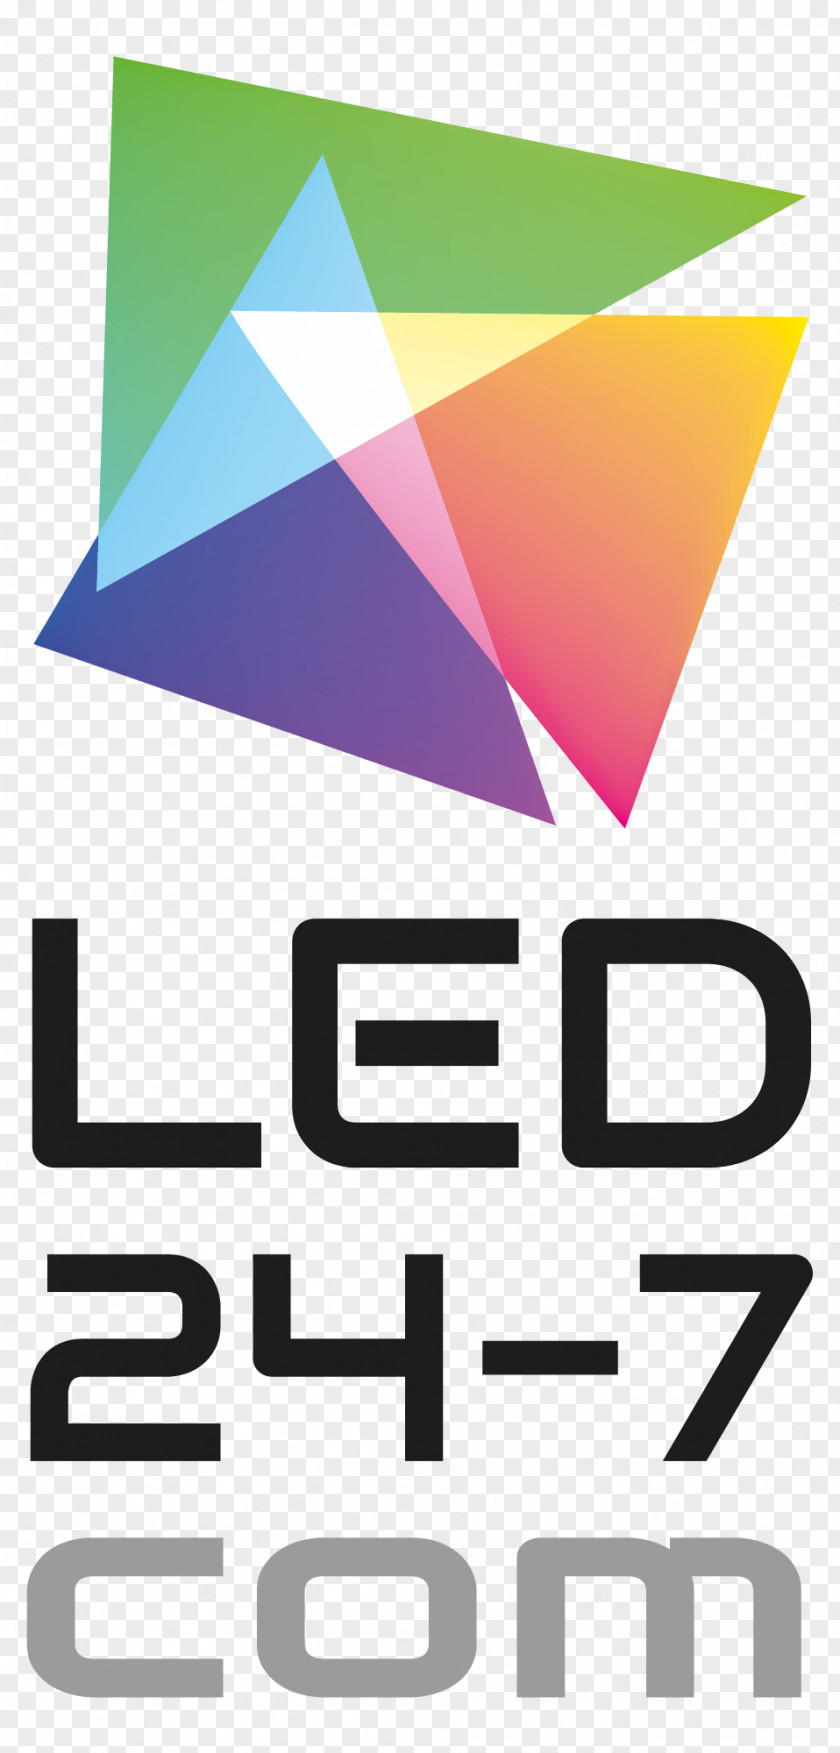 Led Zeppelin Logo Signage Digital Signs Point Of Sale LED Display PNG